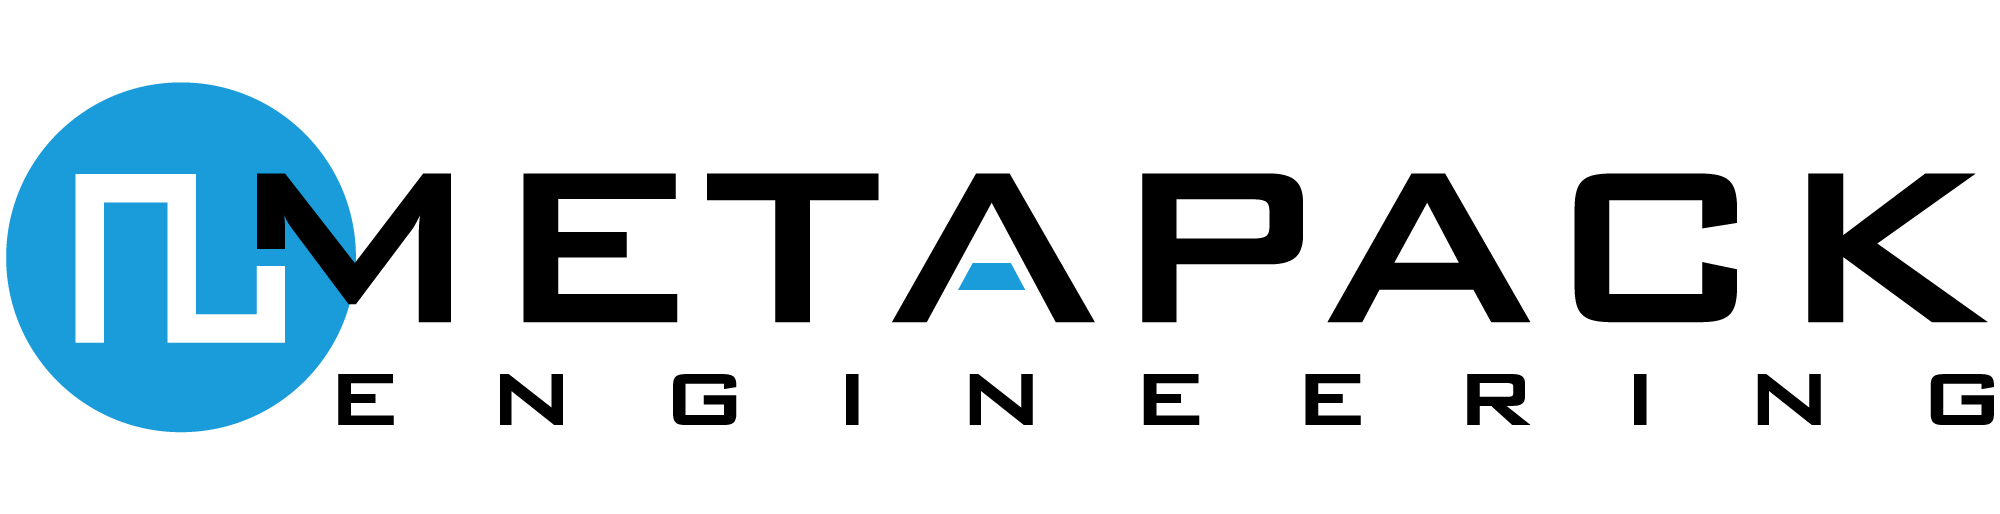 MetaPack Logo Engineering